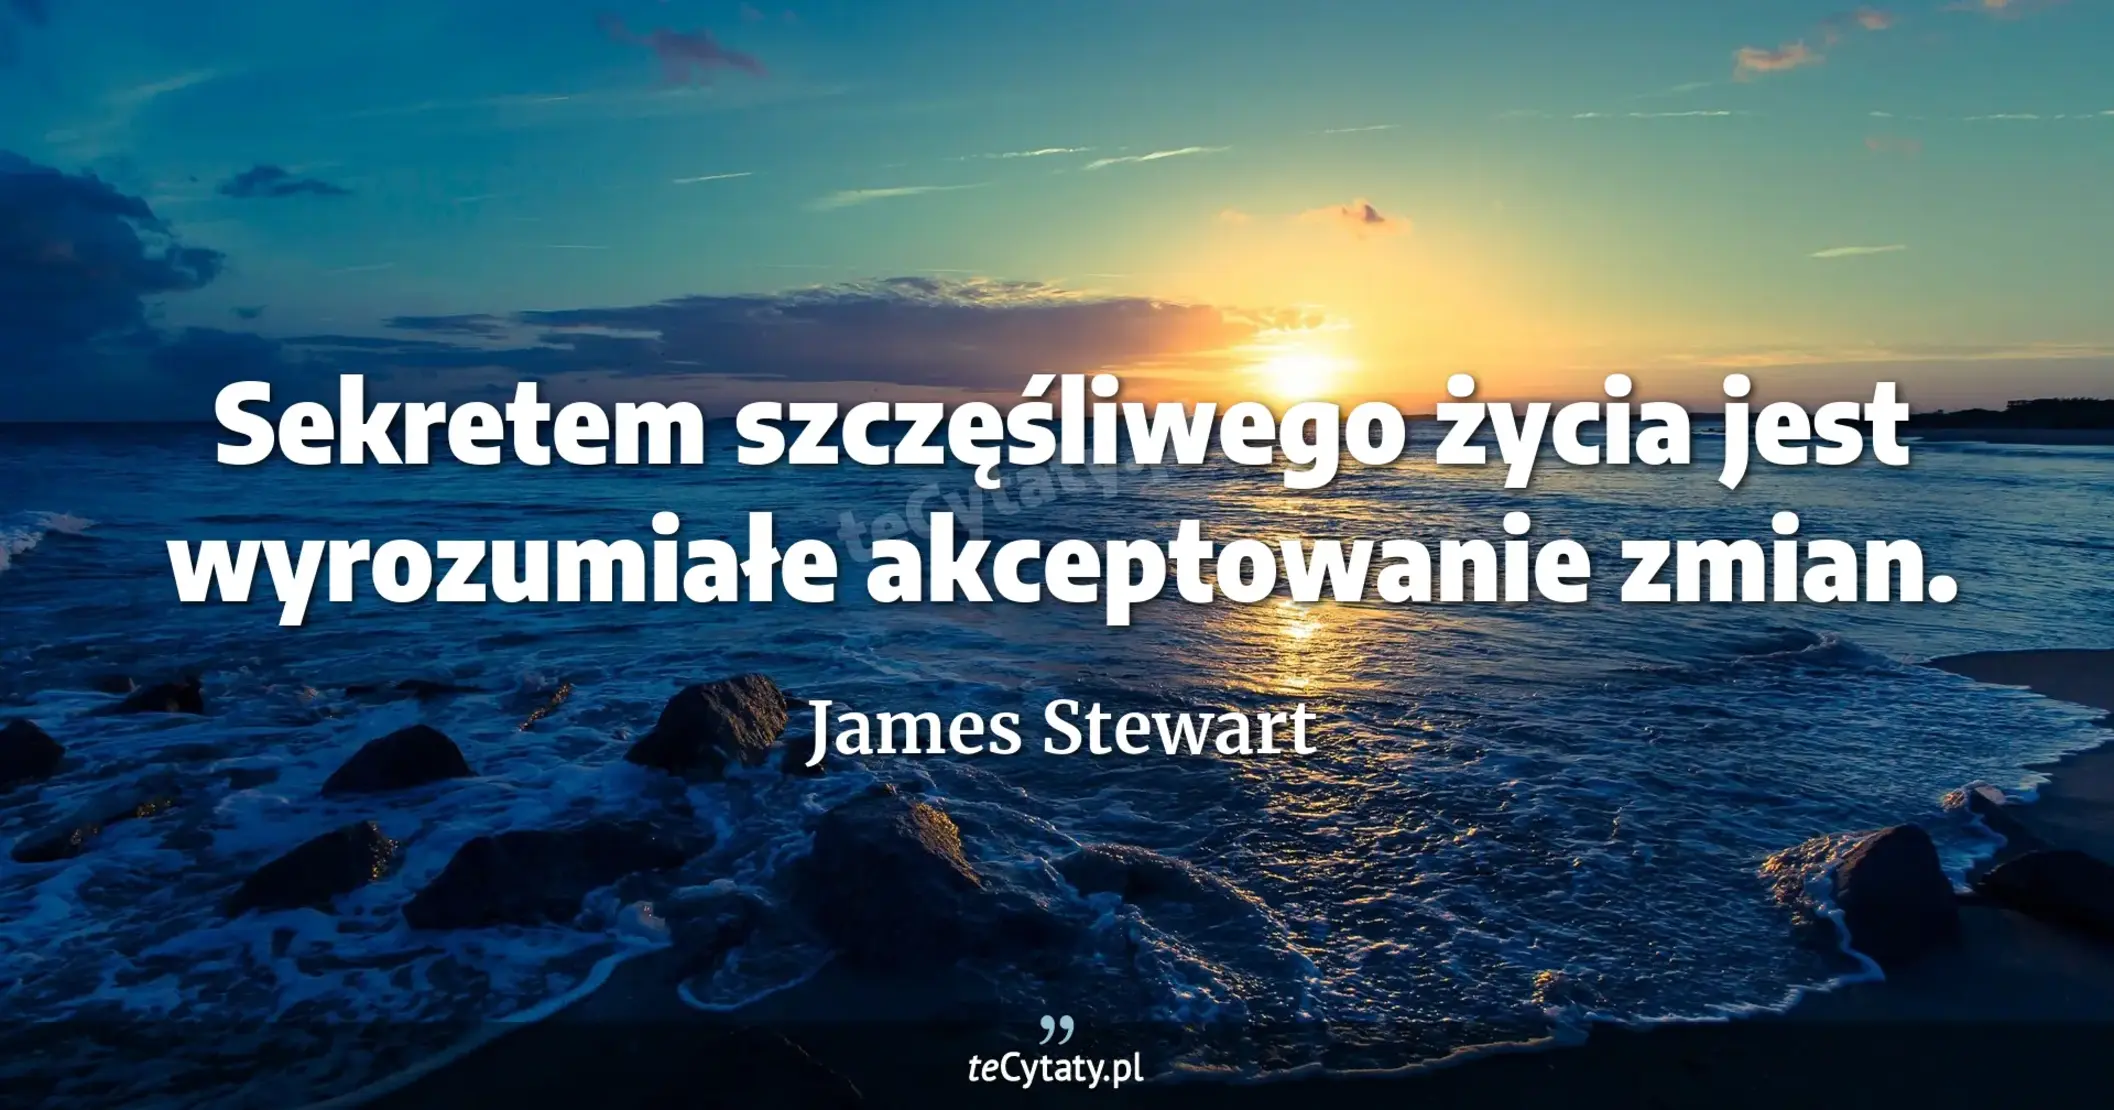 Sekretem szczęśliwego życia jest wyrozumiałe akceptowanie zmian. - James Stewart